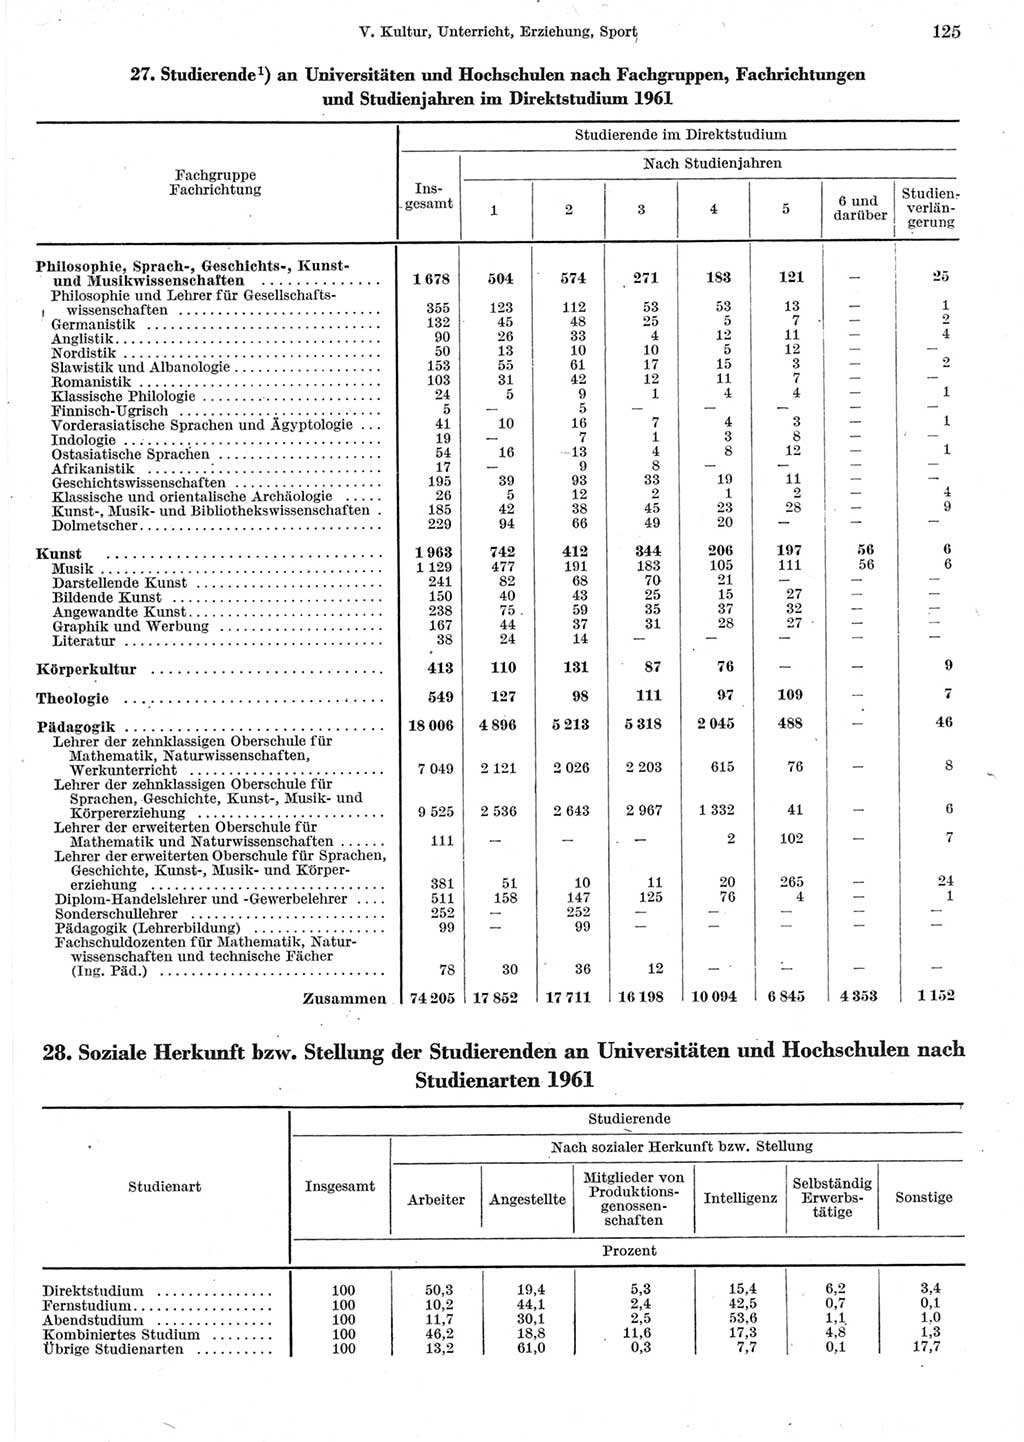 Statistisches Jahrbuch der Deutschen Demokratischen Republik (DDR) 1962, Seite 125 (Stat. Jb. DDR 1962, S. 125)